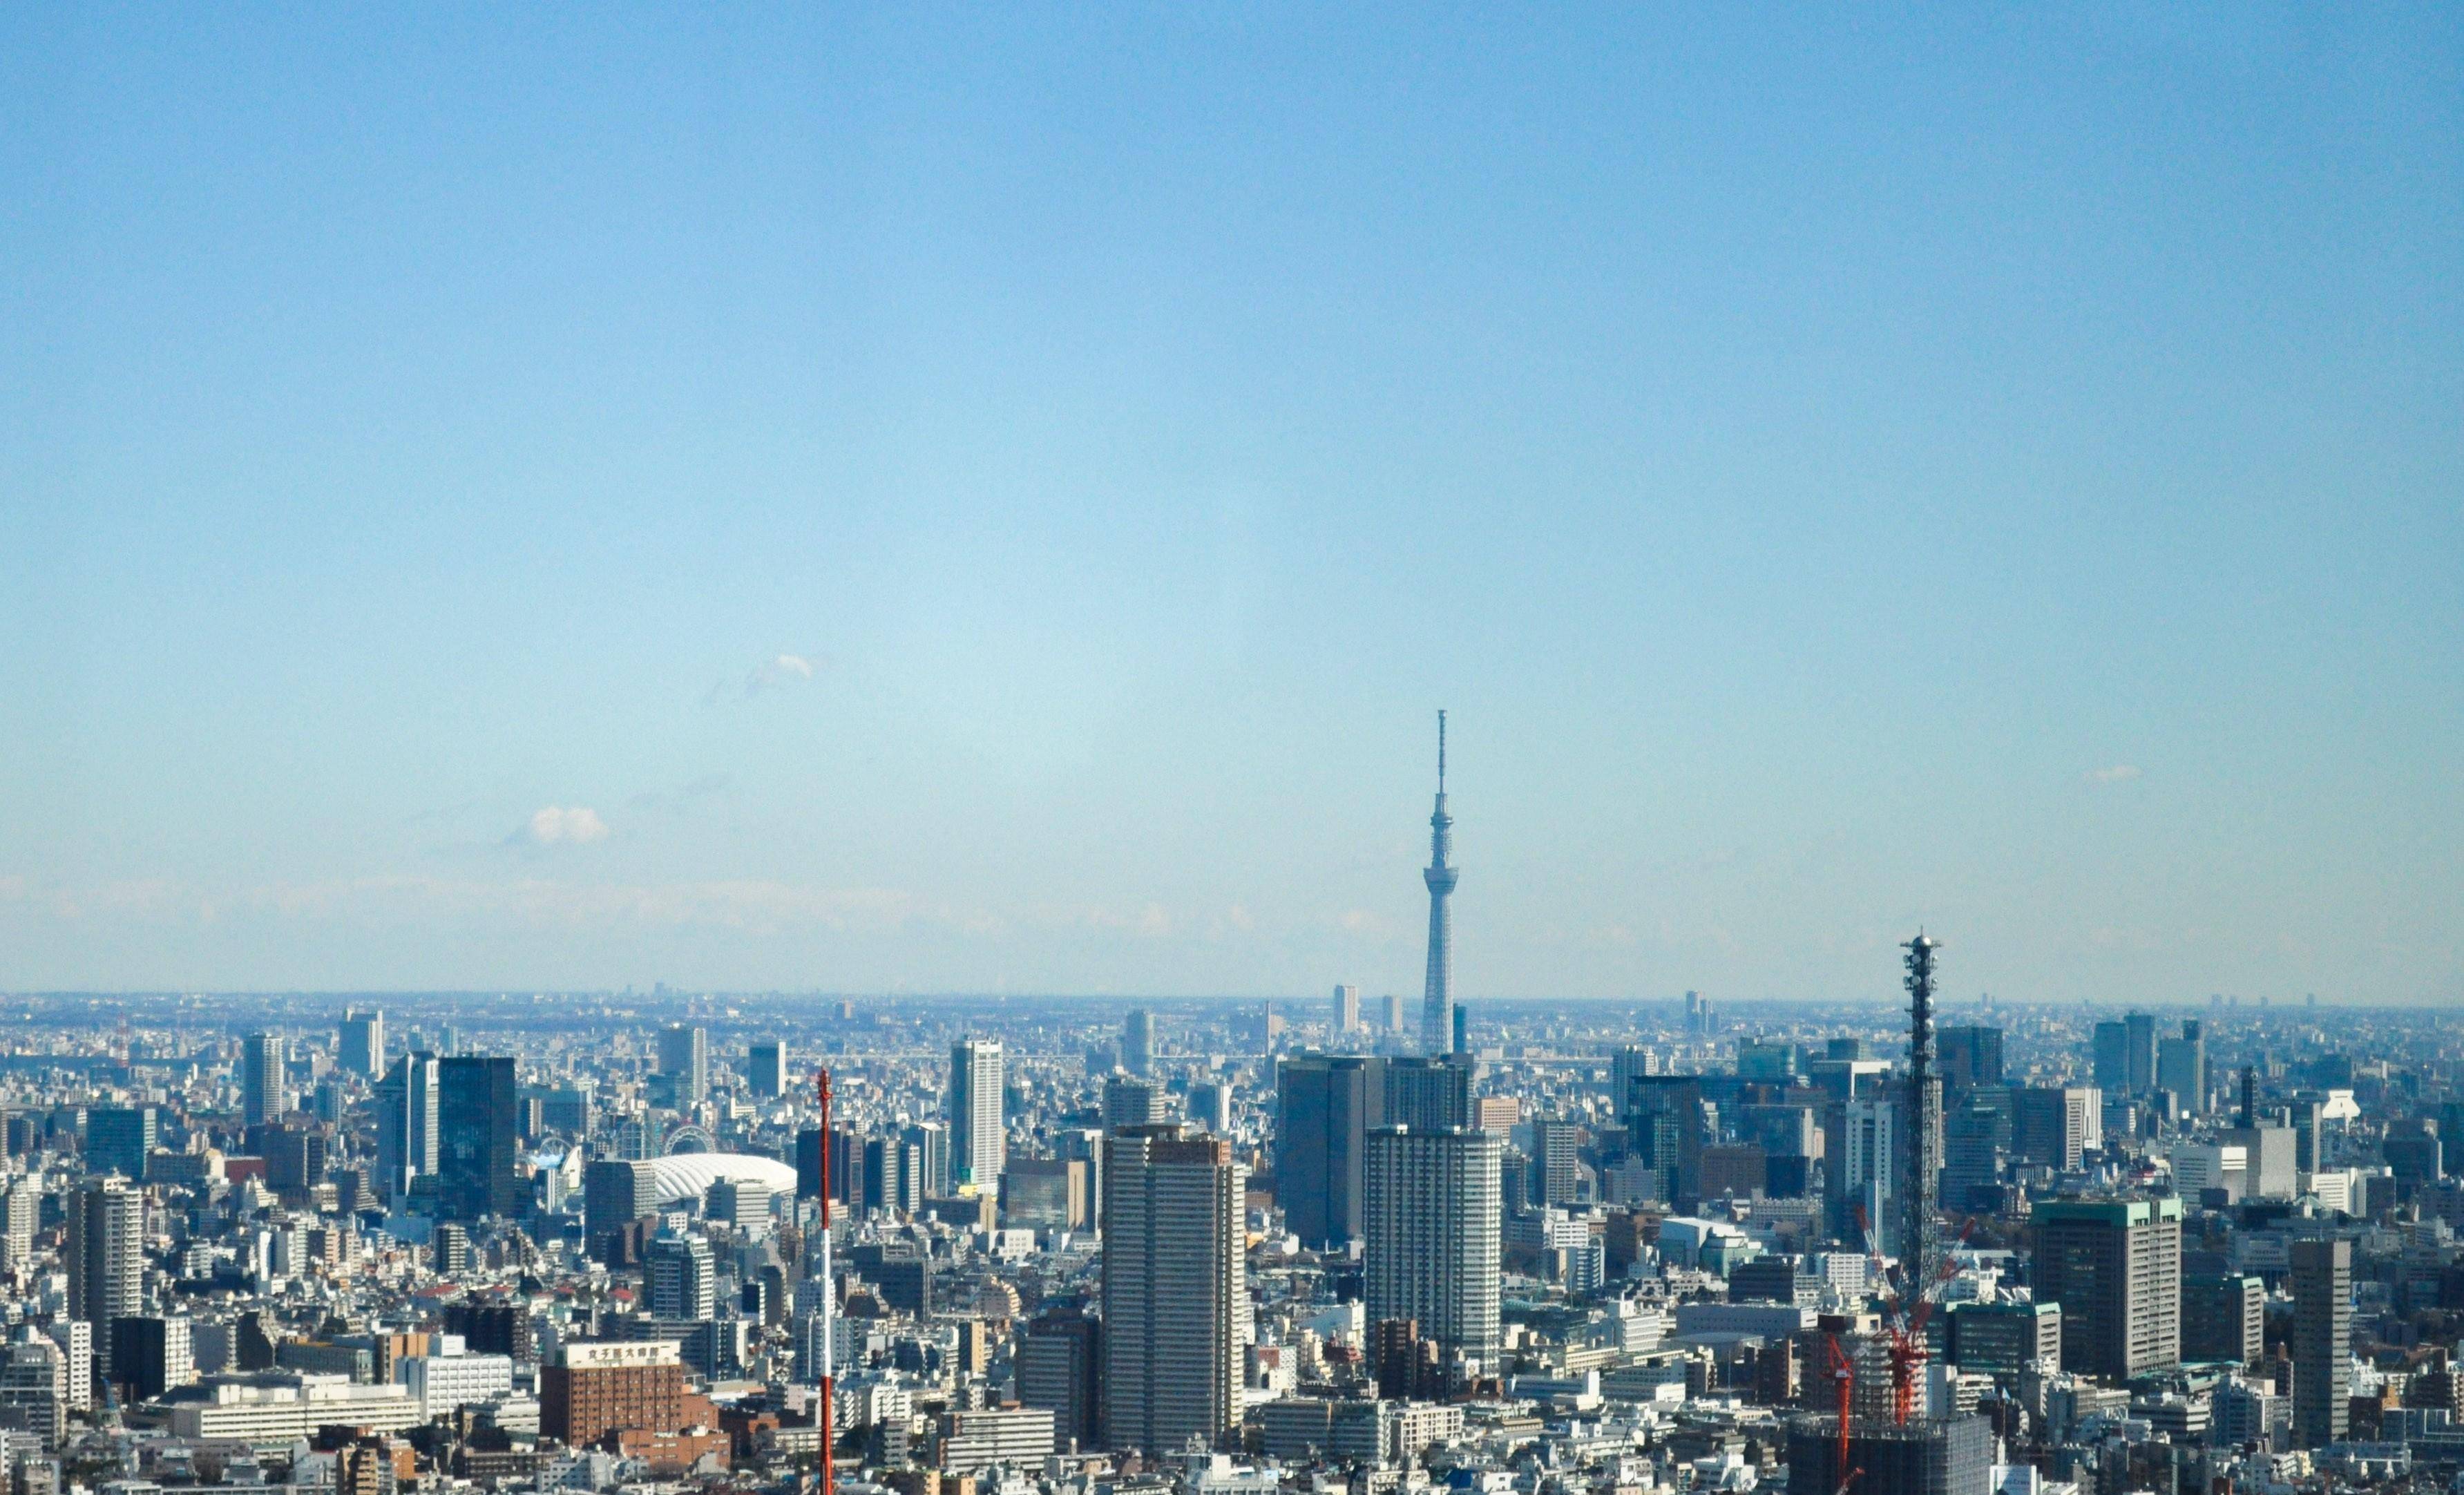 形成了首都圈城市群,从东京的中心城区,很难一眼看到城市群的边缘